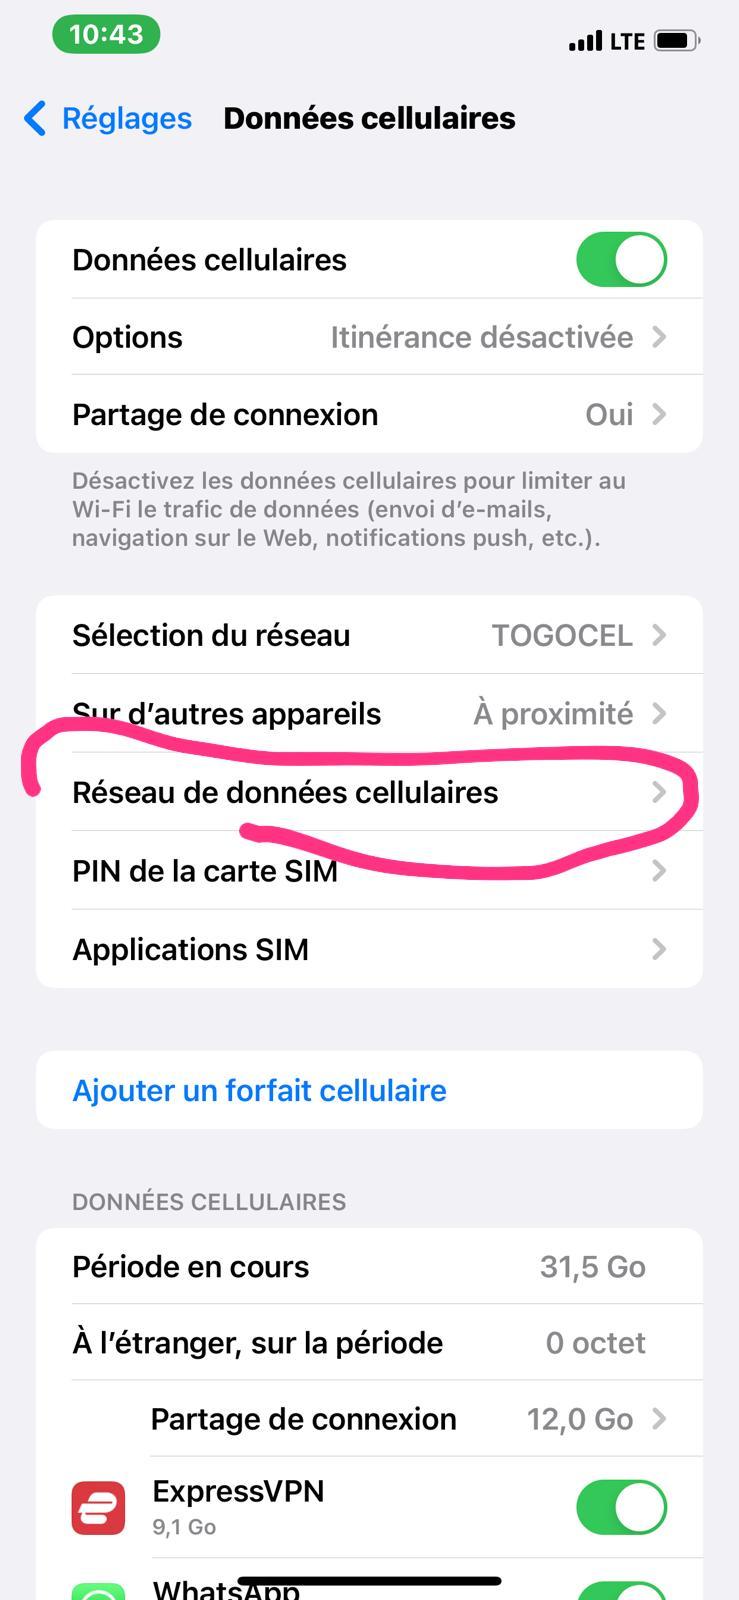 WhatsApp Image 2022 02 24 at 10.45.33 - Comment partager la connexion internet sur un iPhone avec Togocel  ?